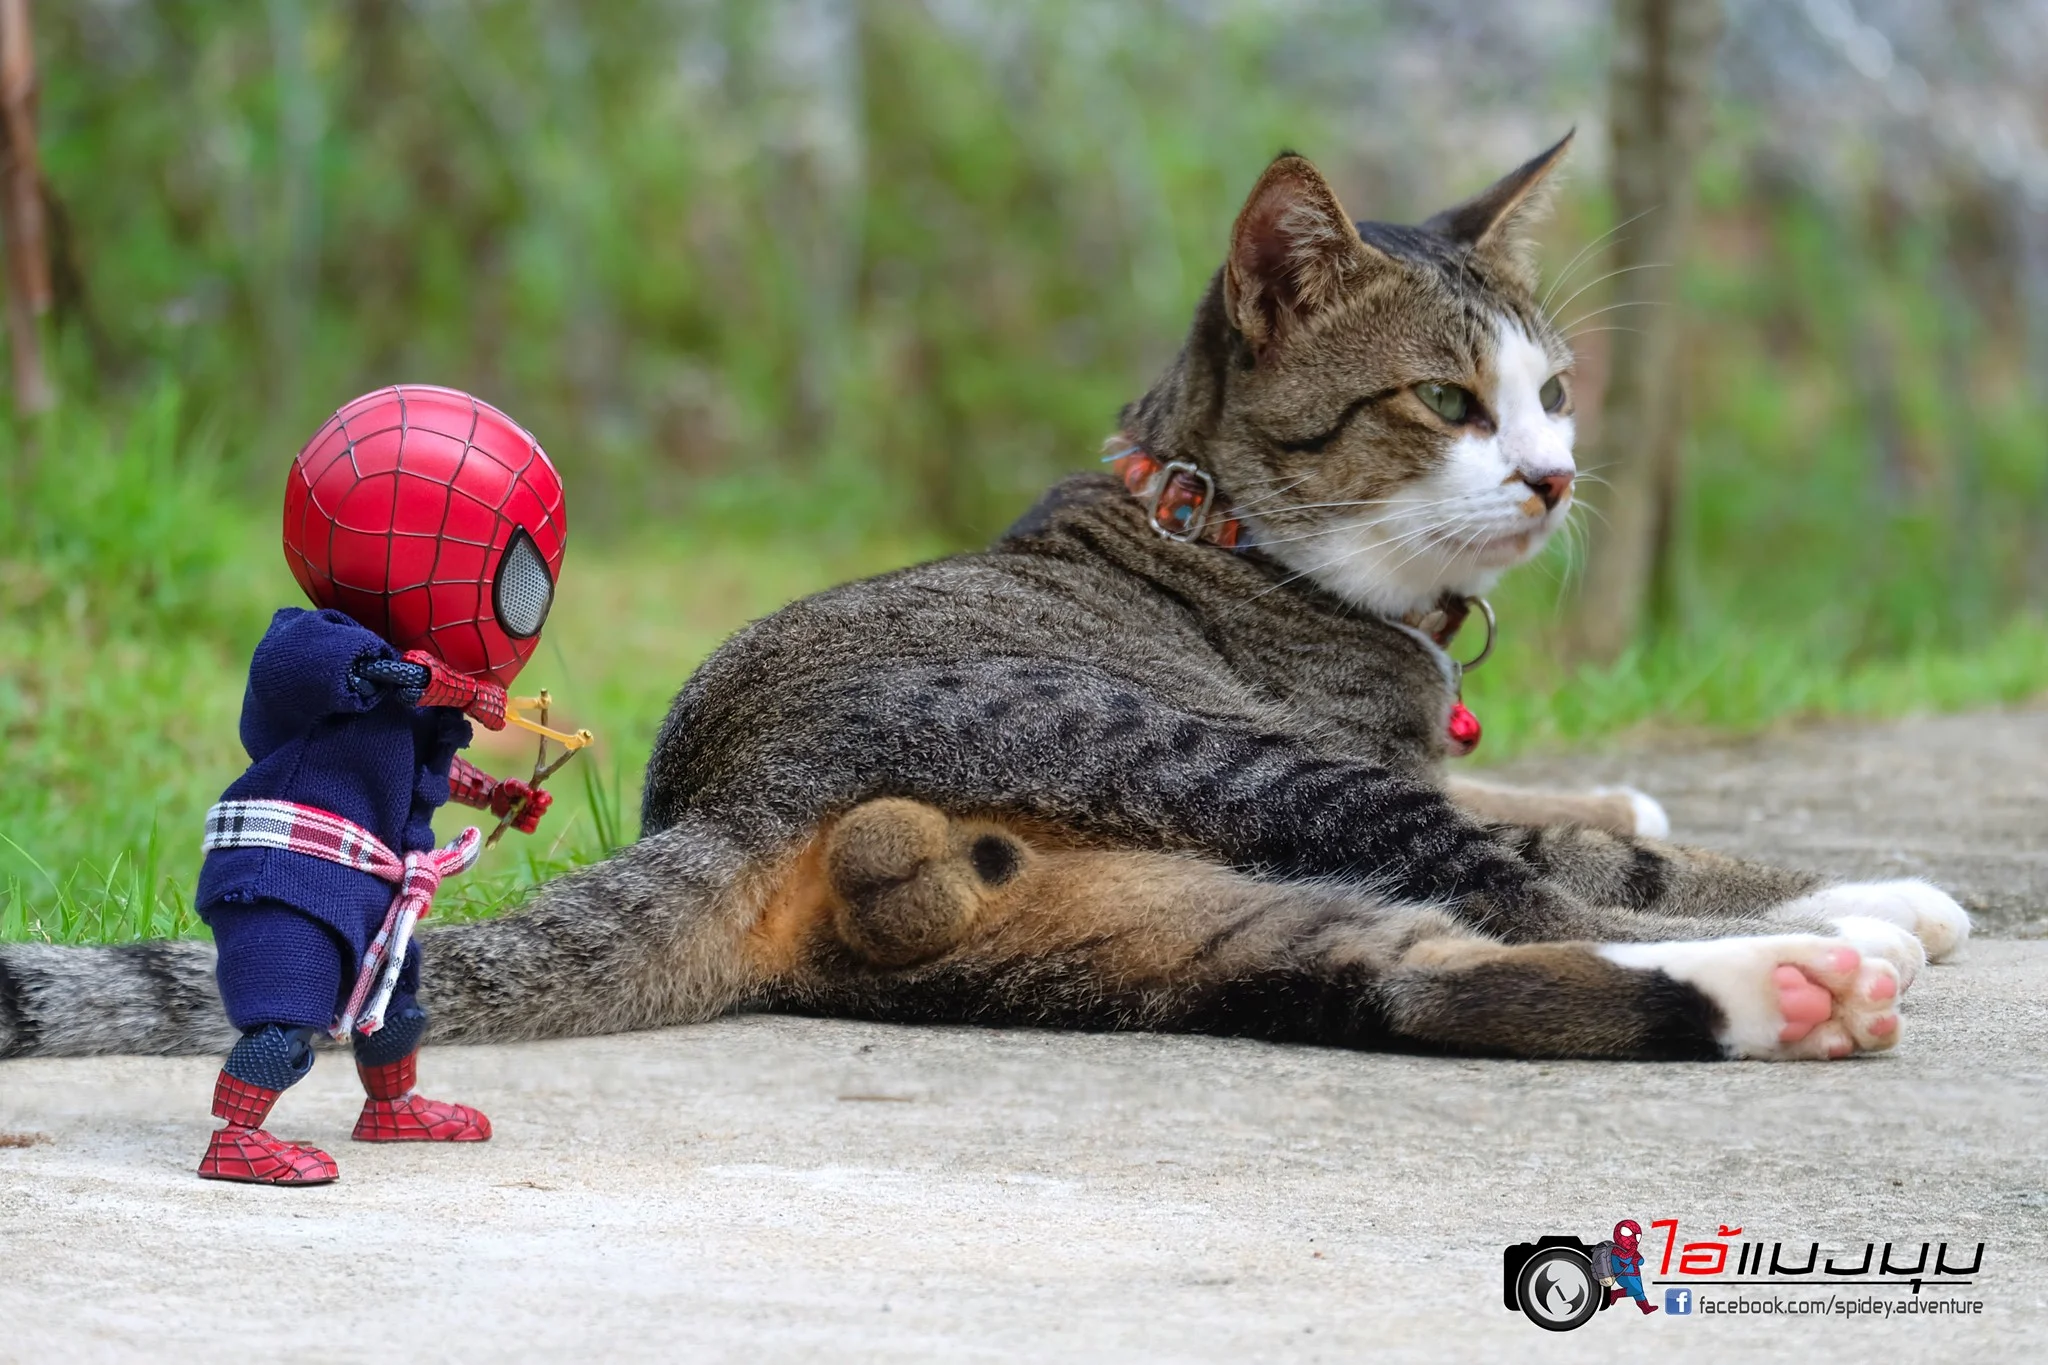 Художник додав до фото з котиками зображення Людини-павука – це виглядає дуже смішно - фото 459376